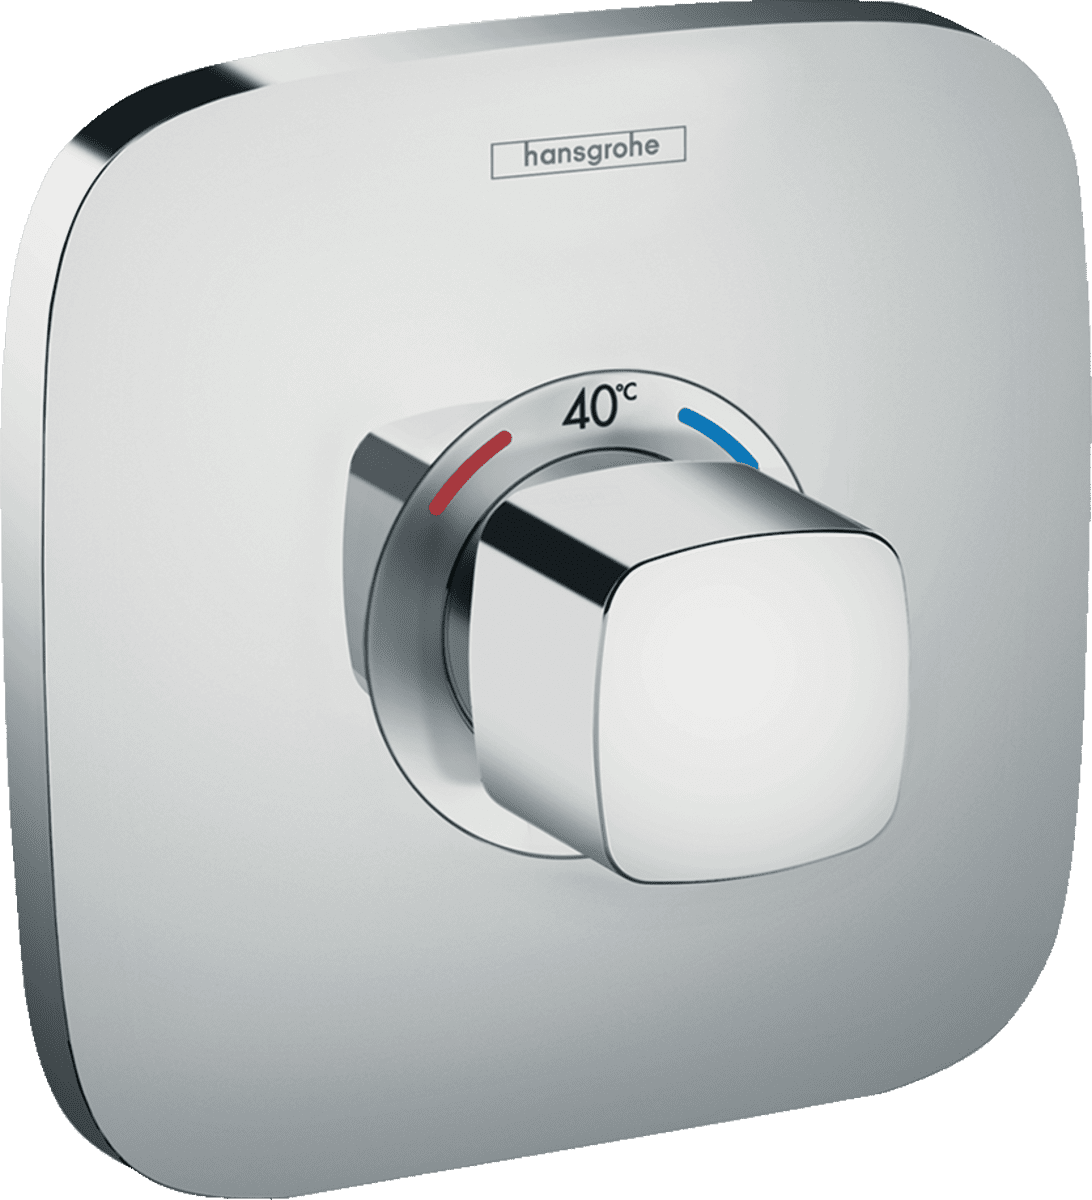 εικόνα του HANSGROHE Ecostat E Thermostat for concealed installation #15705000 - Chrome